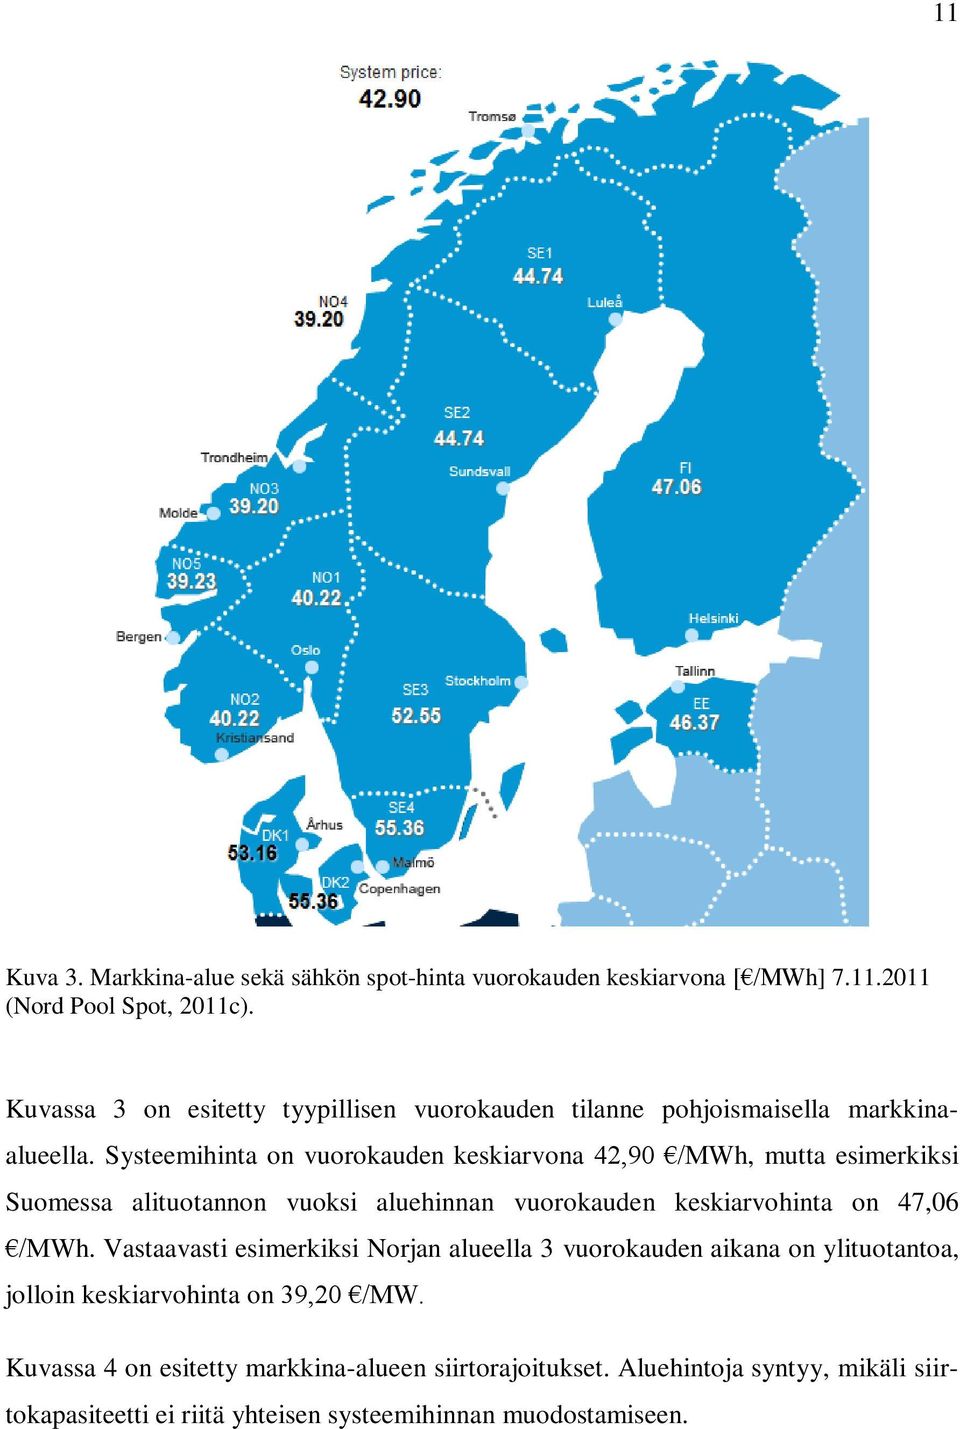 Systeemihinta on vuorokauden keskiarvona 42,90 /MWh, mutta esimerkiksi Suomessa alituotannon vuoksi aluehinnan vuorokauden keskiarvohinta on 47,06 /MWh.